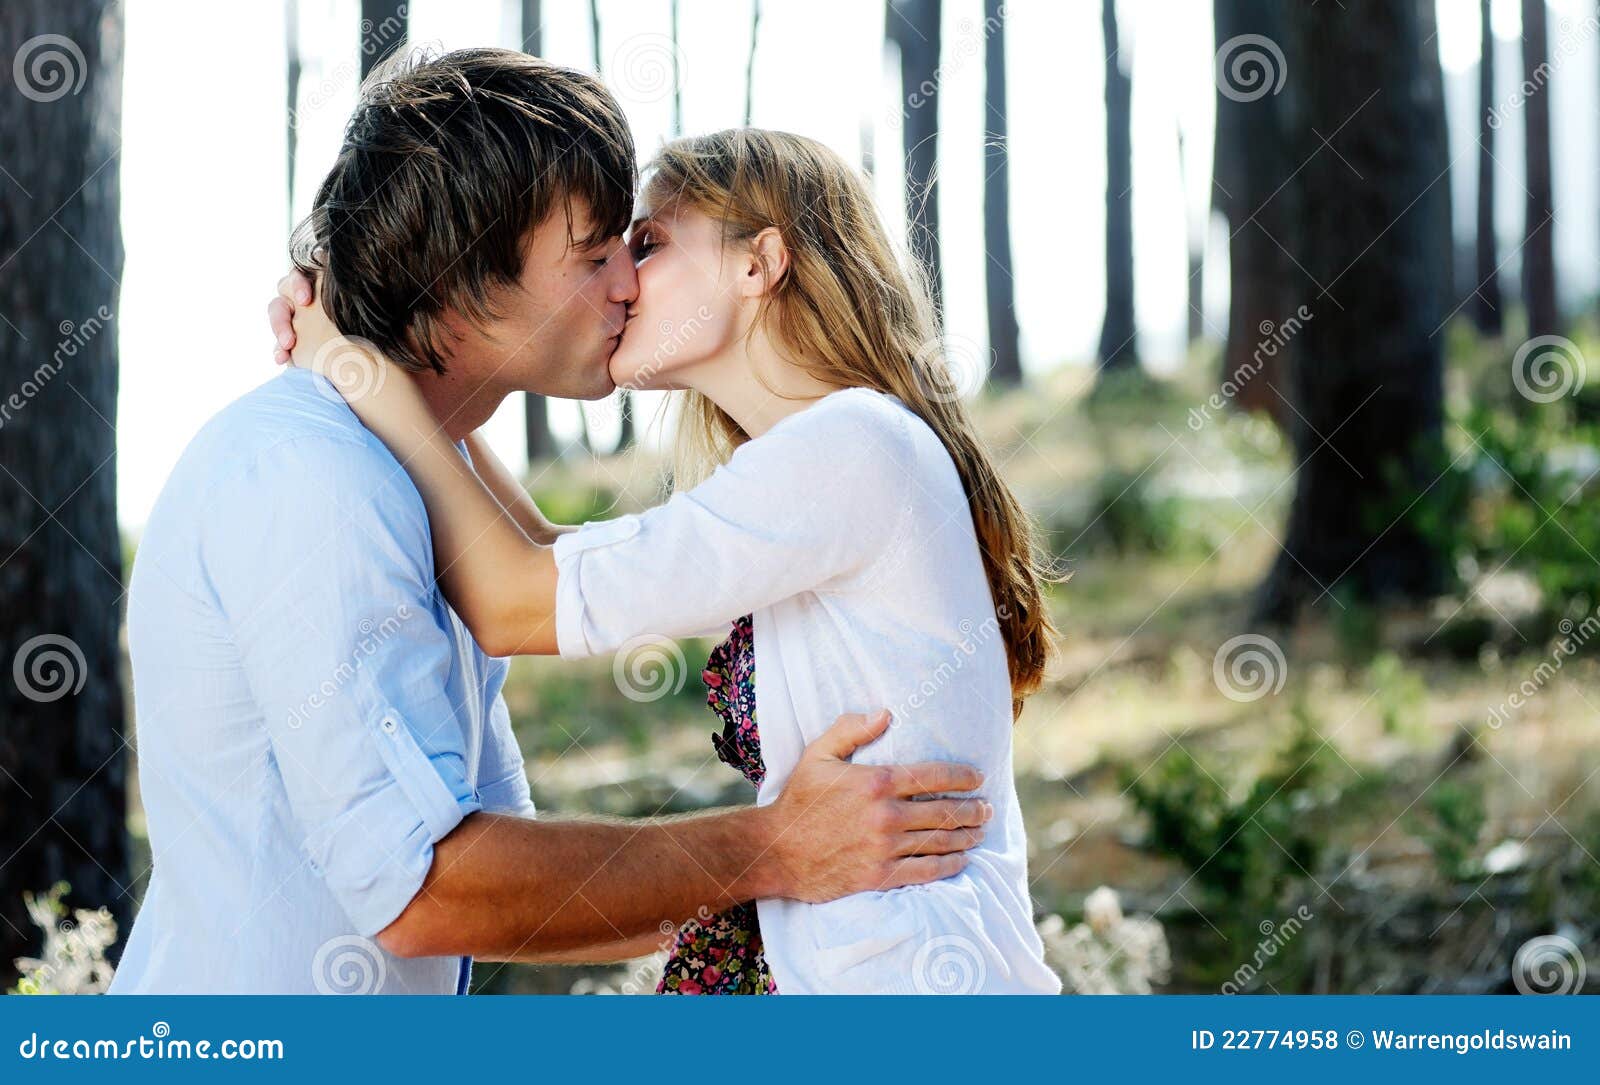 Где муж и жена целовались. Муж и жена поцелуй. Муж и жена целуются. Фотосессия муж и жена поцелуй. Муж и жена милуются.